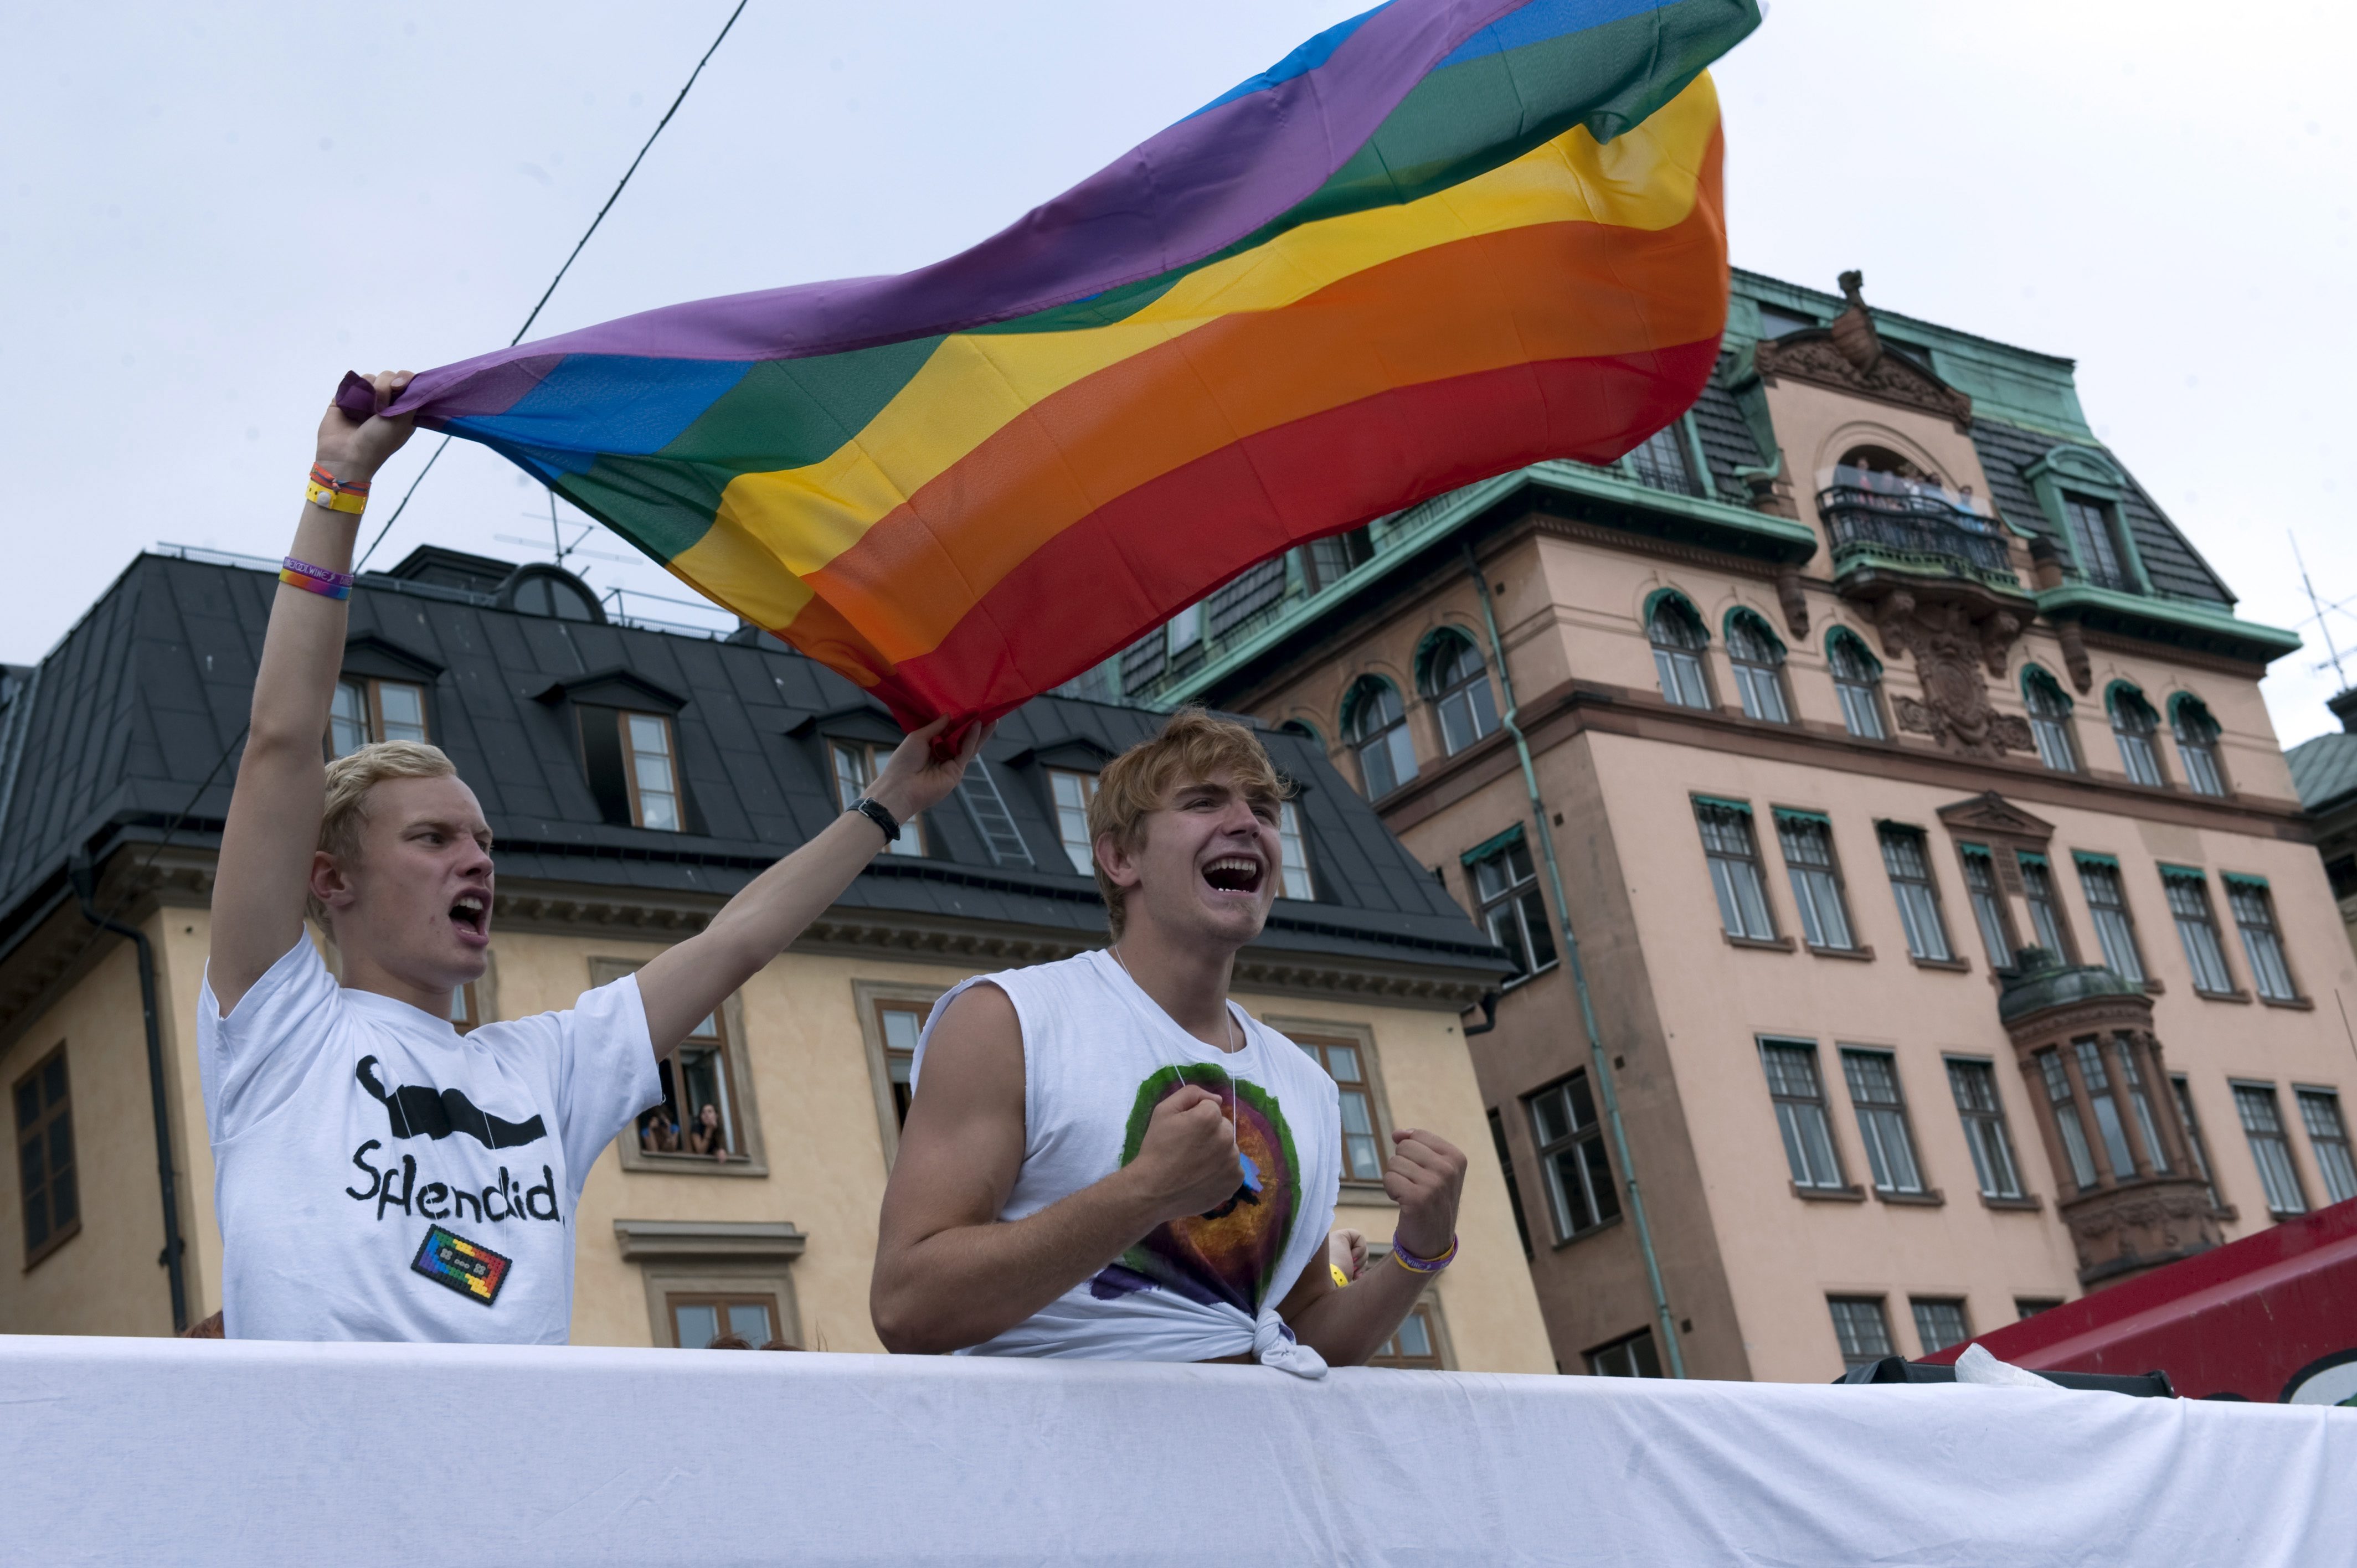 Örebros kommuns användarpolicy hindrar anställda från att gå in på hemsidor som rör homosexualitet.